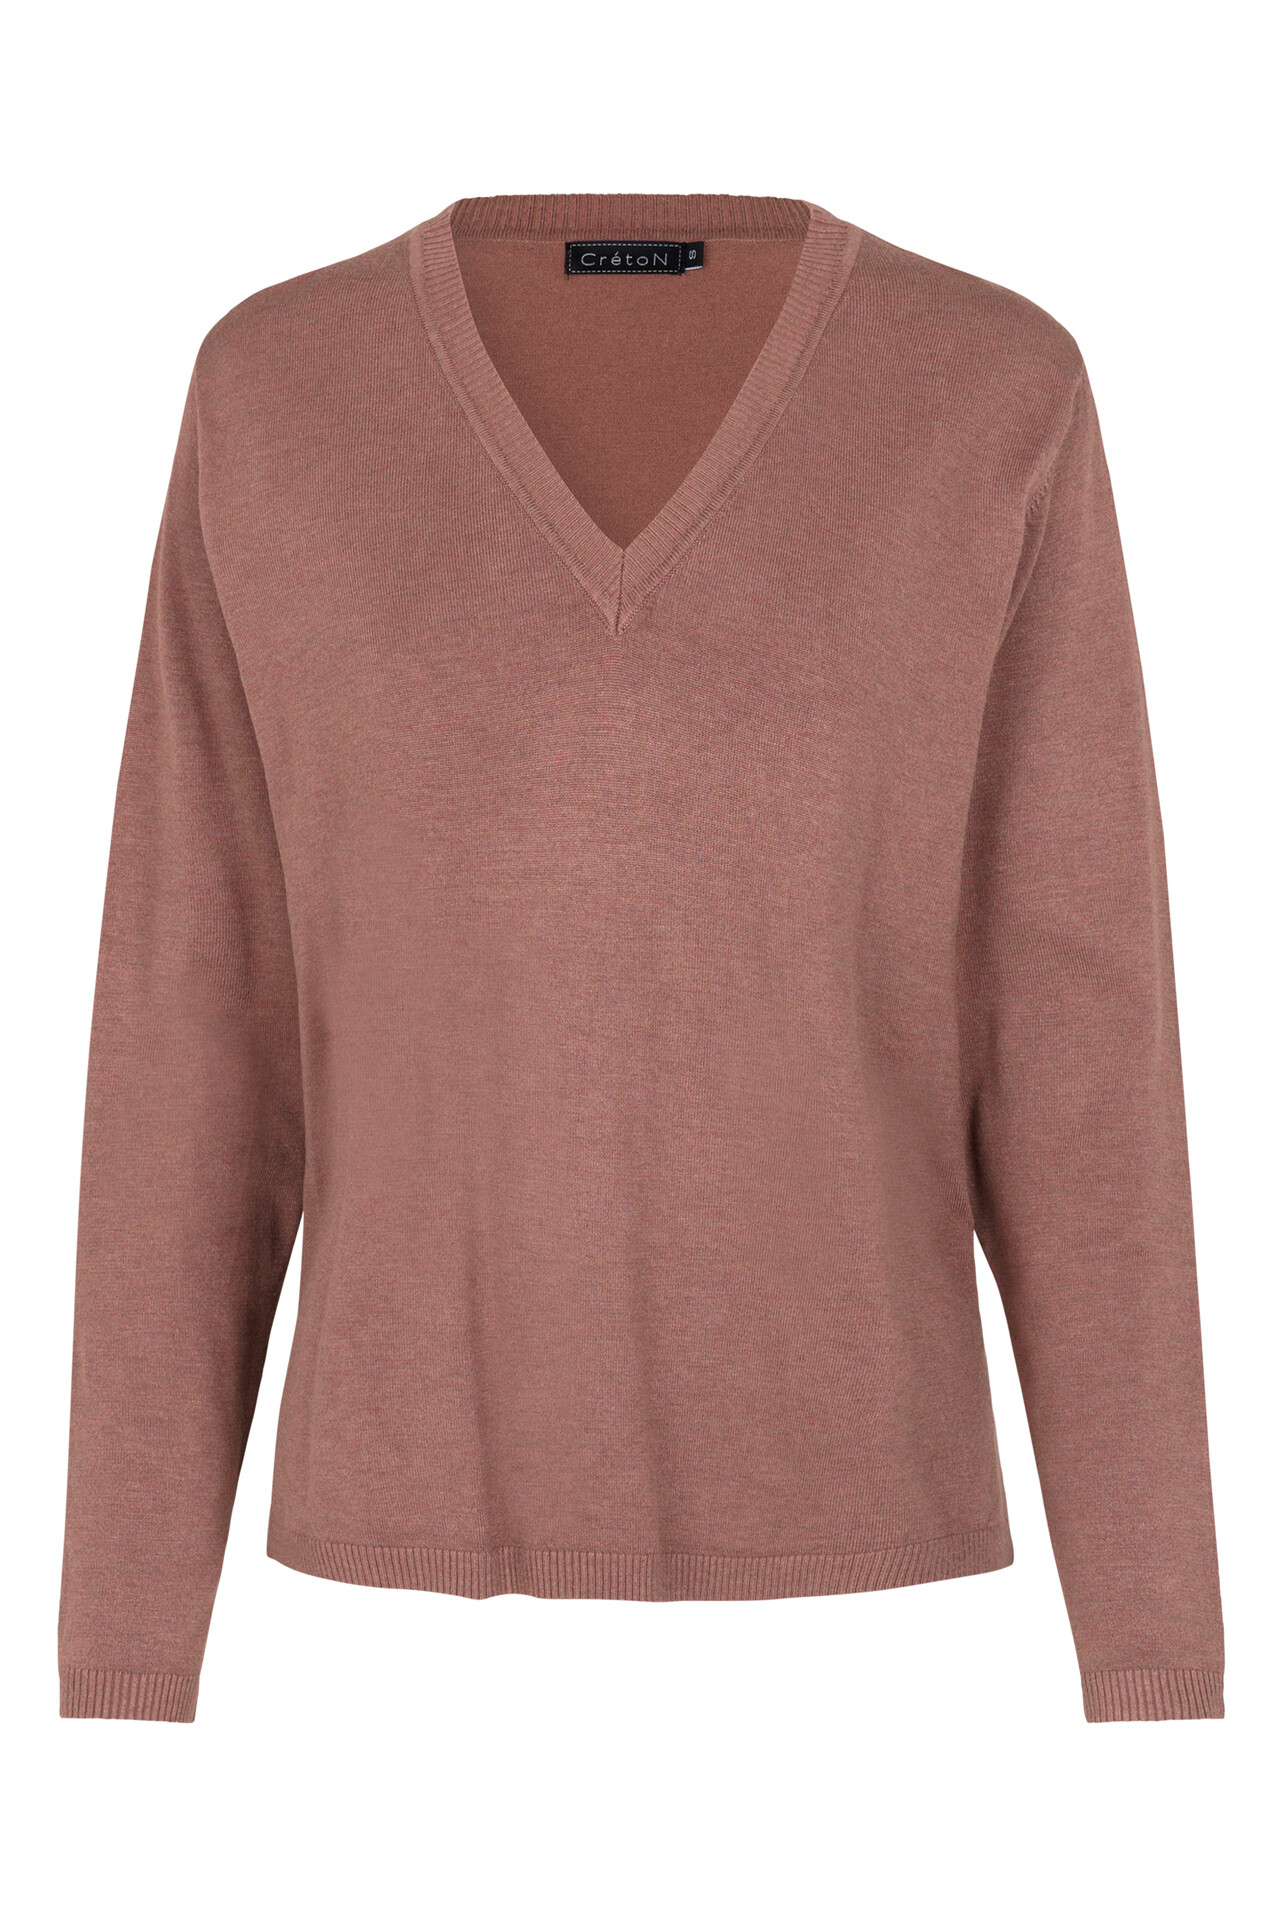 CRÉTON Wicky v-hals sweater (ROSA M)